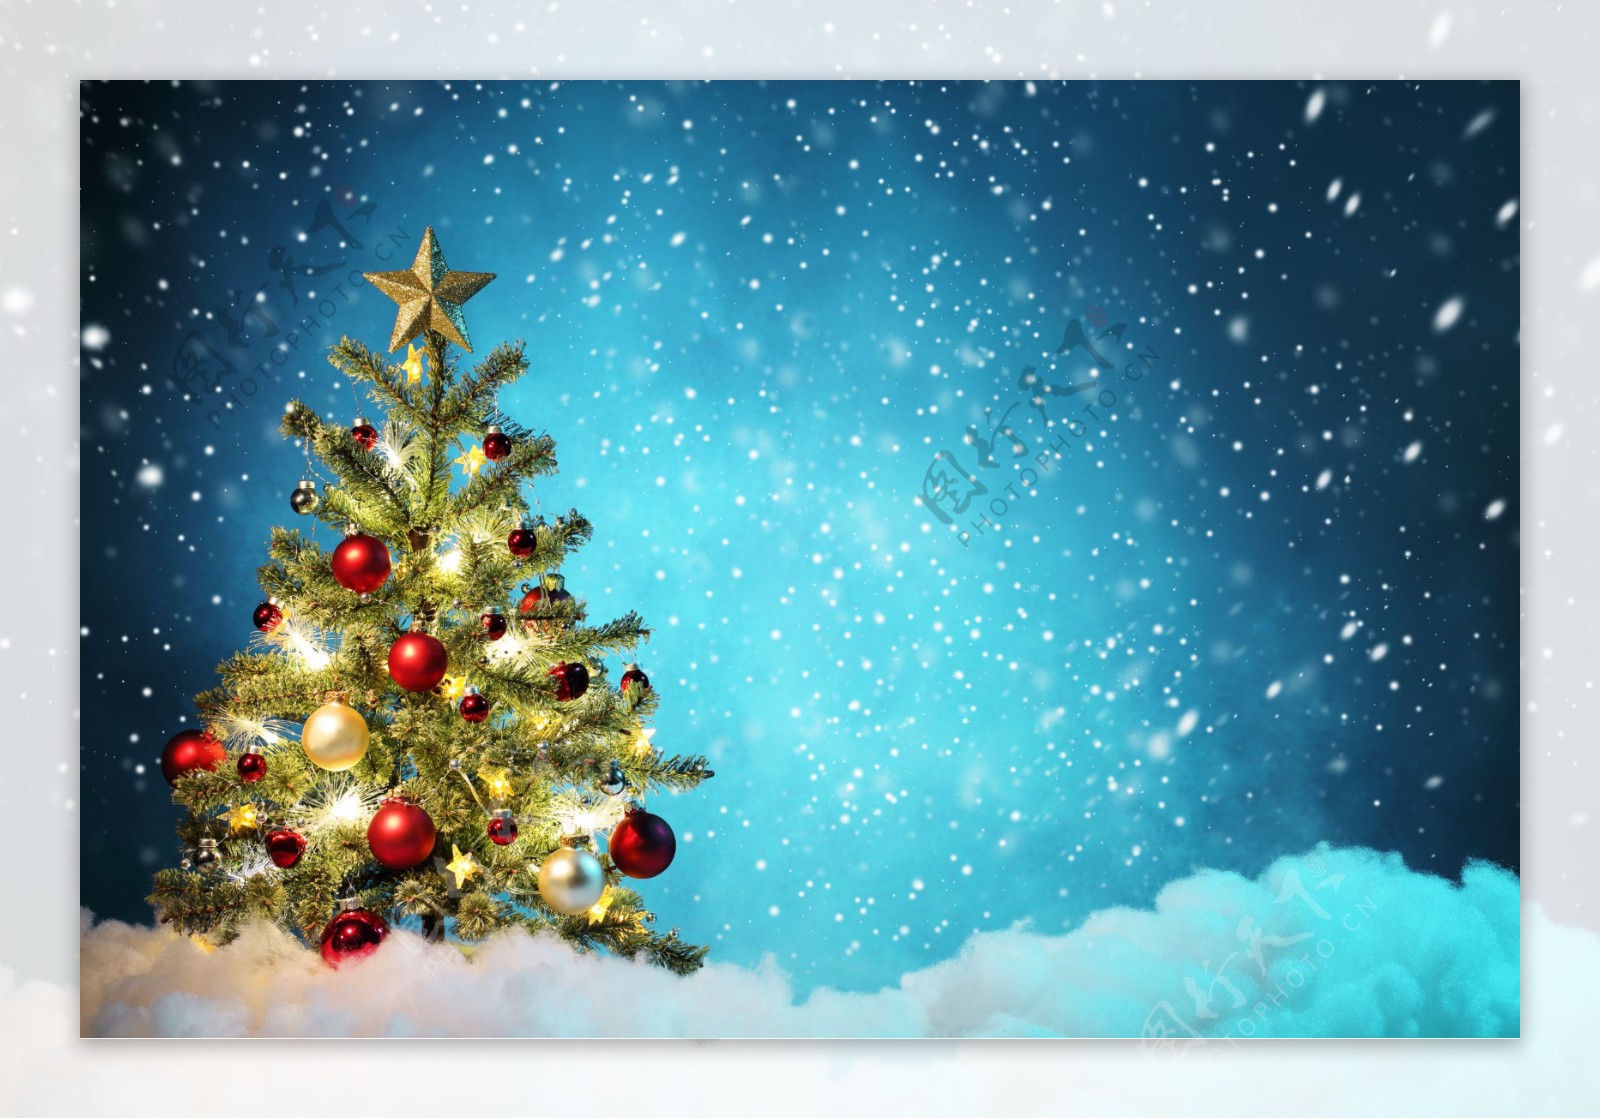 蓝色雪地中的圣诞树图片